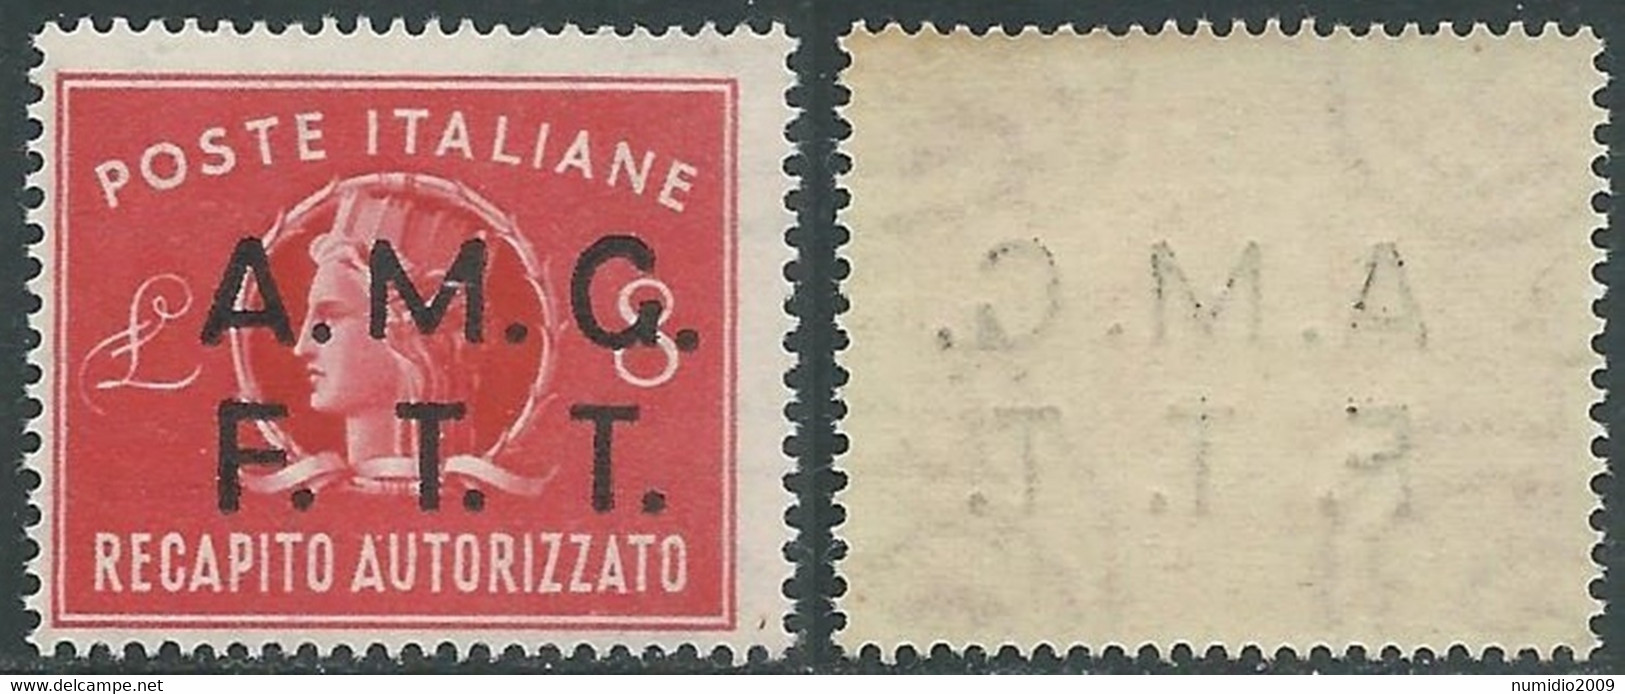 1947 TRIESTE A RECAPITO AUTORIZZATO 8 LIRE DECALCO MNH ** - RE6-8 - Express Mail